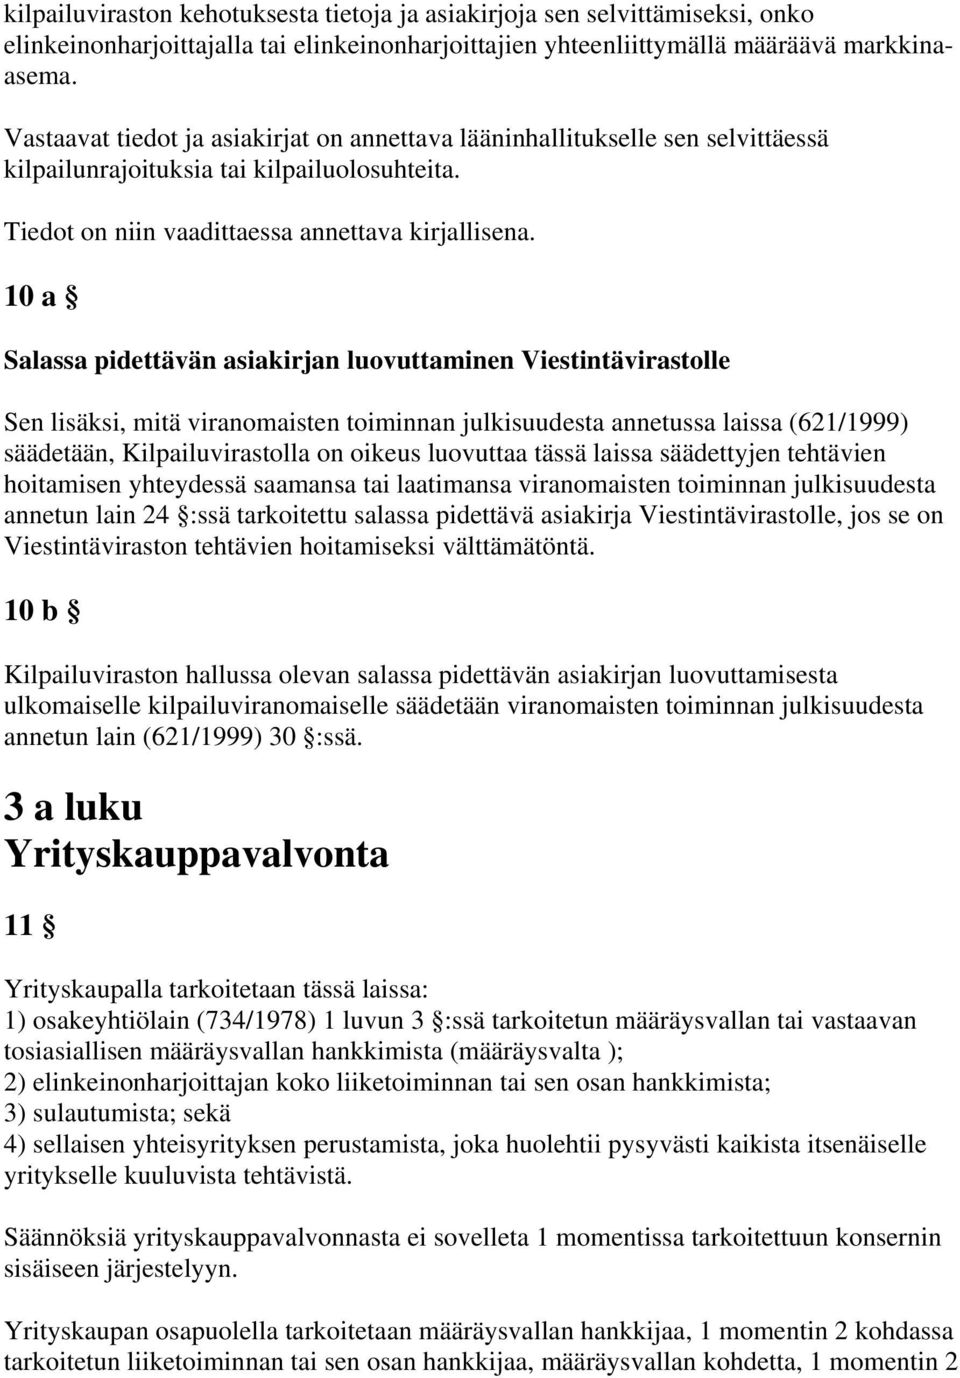 10 a Salassa pidettävän asiakirjan luovuttaminen Viestintävirastolle Sen lisäksi, mitä viranomaisten toiminnan julkisuudesta annetussa laissa (621/1999) säädetään, Kilpailuvirastolla on oikeus